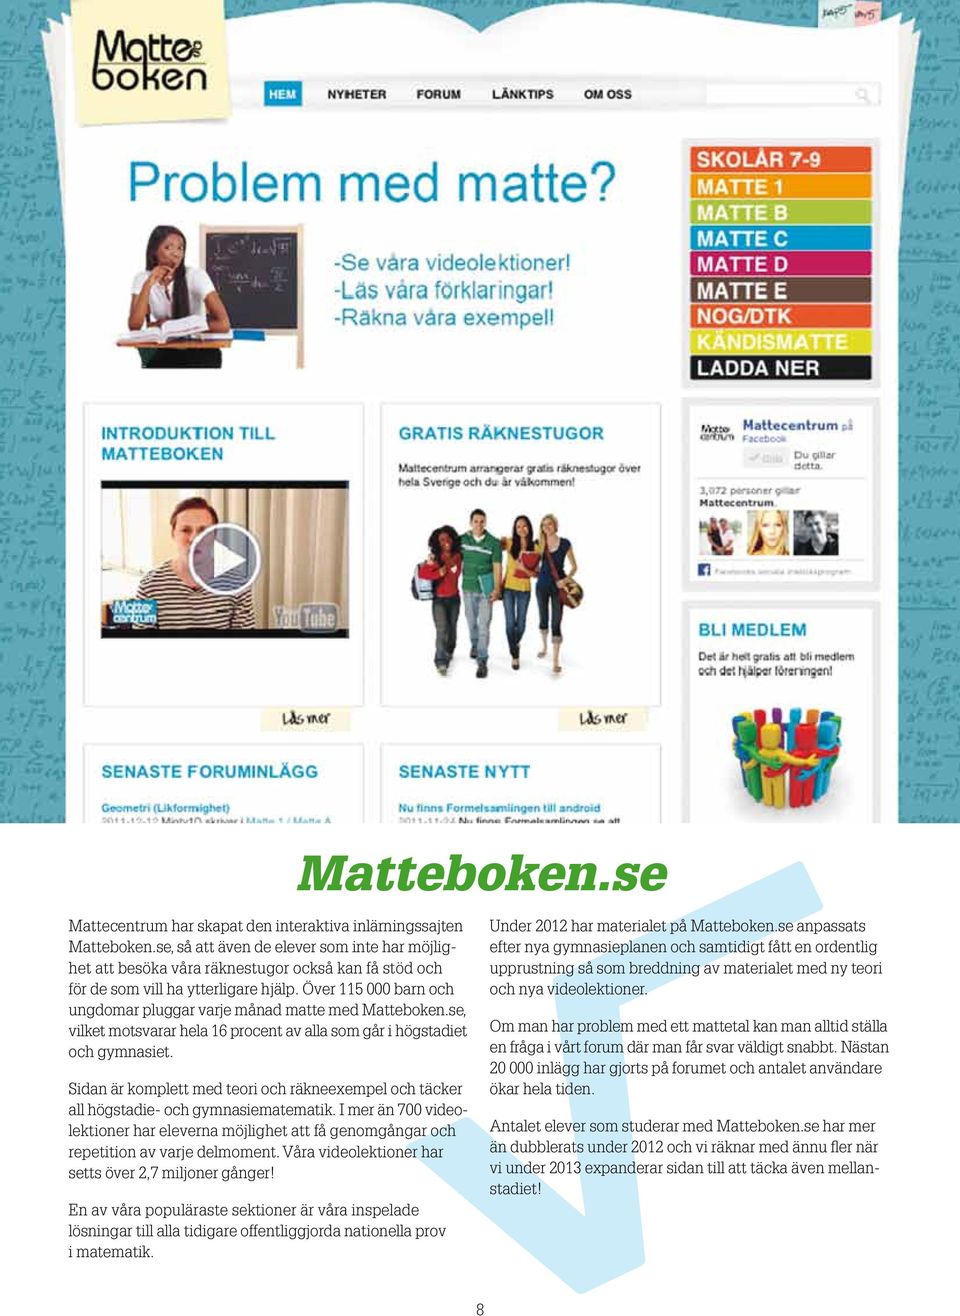 Över 115 000 barn och ungdomar pluggar varje månad matte med Matteboken.se, vilket motsvarar hela 16 procent av alla som går i högstadiet och gymnasiet.